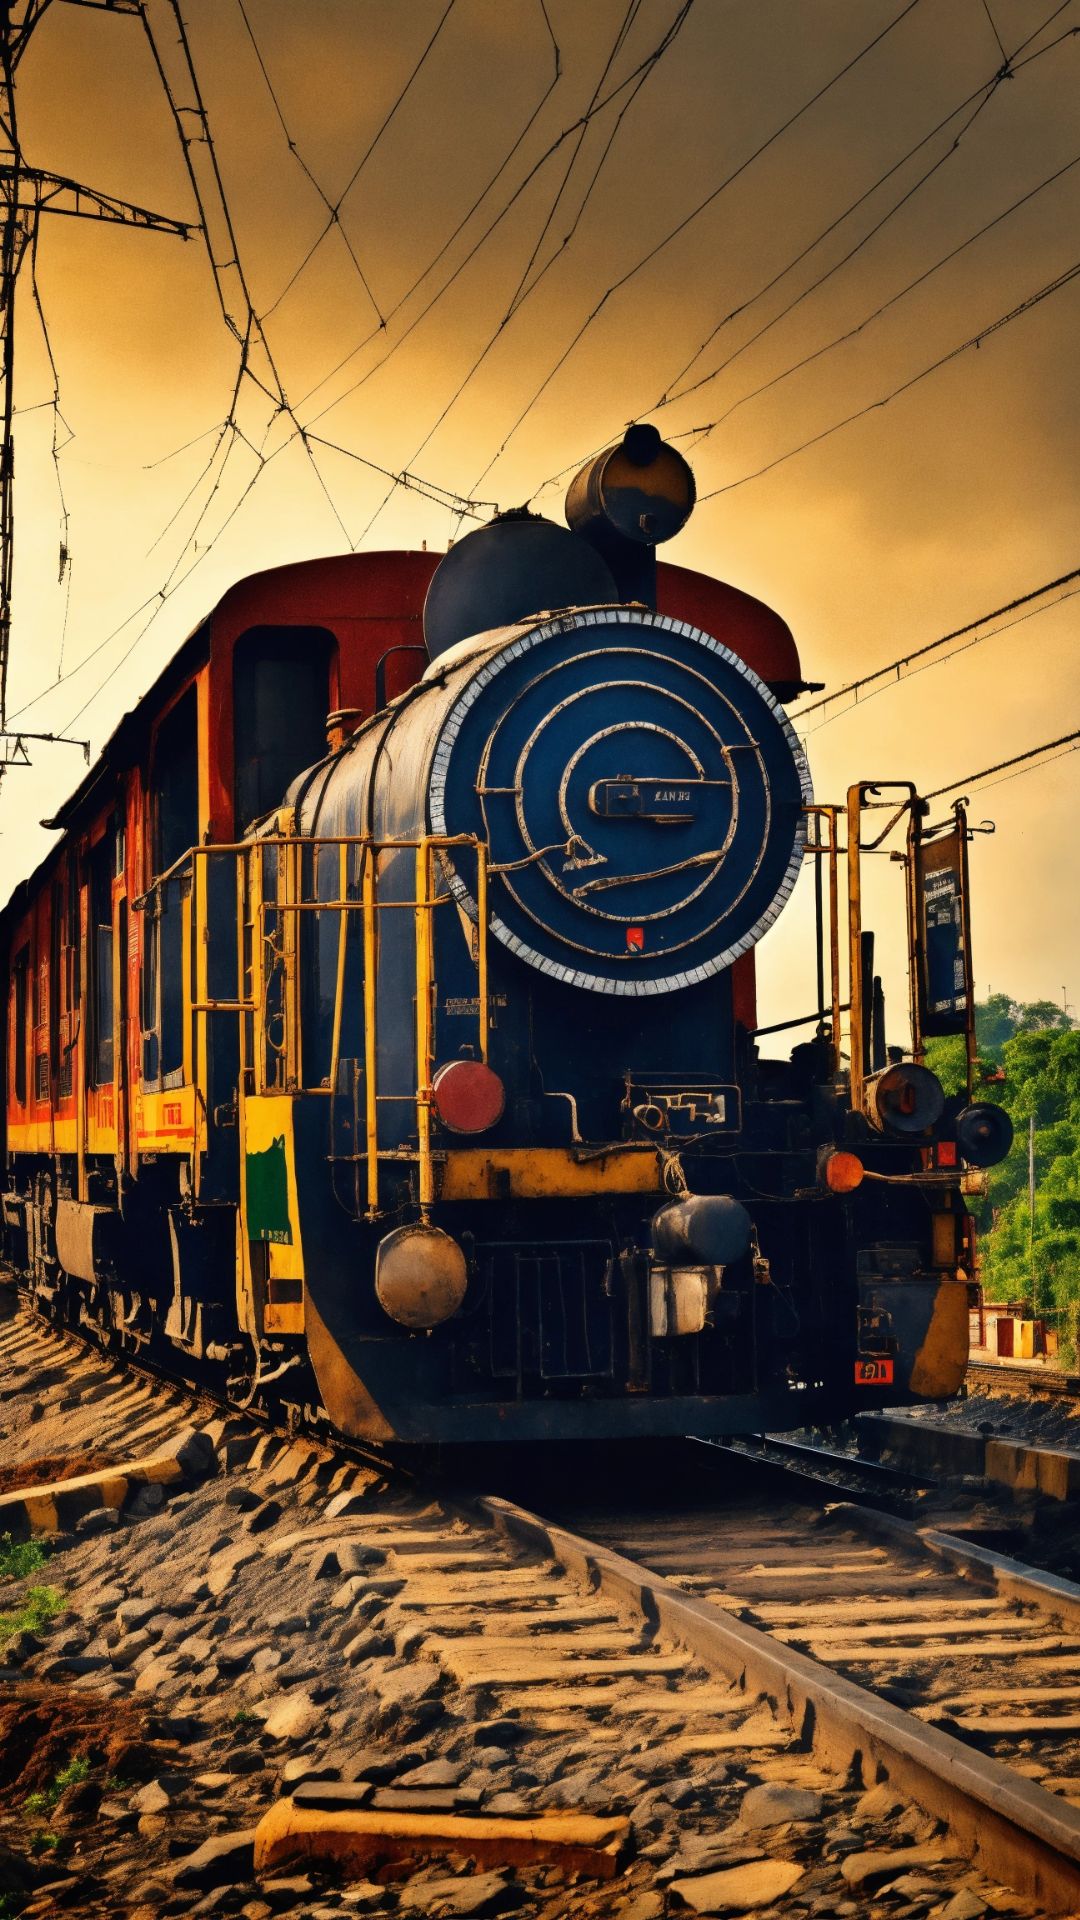 भारत की वंदे भारत तो ये है पाकिस्तान की सबसे तेज ट्रेन